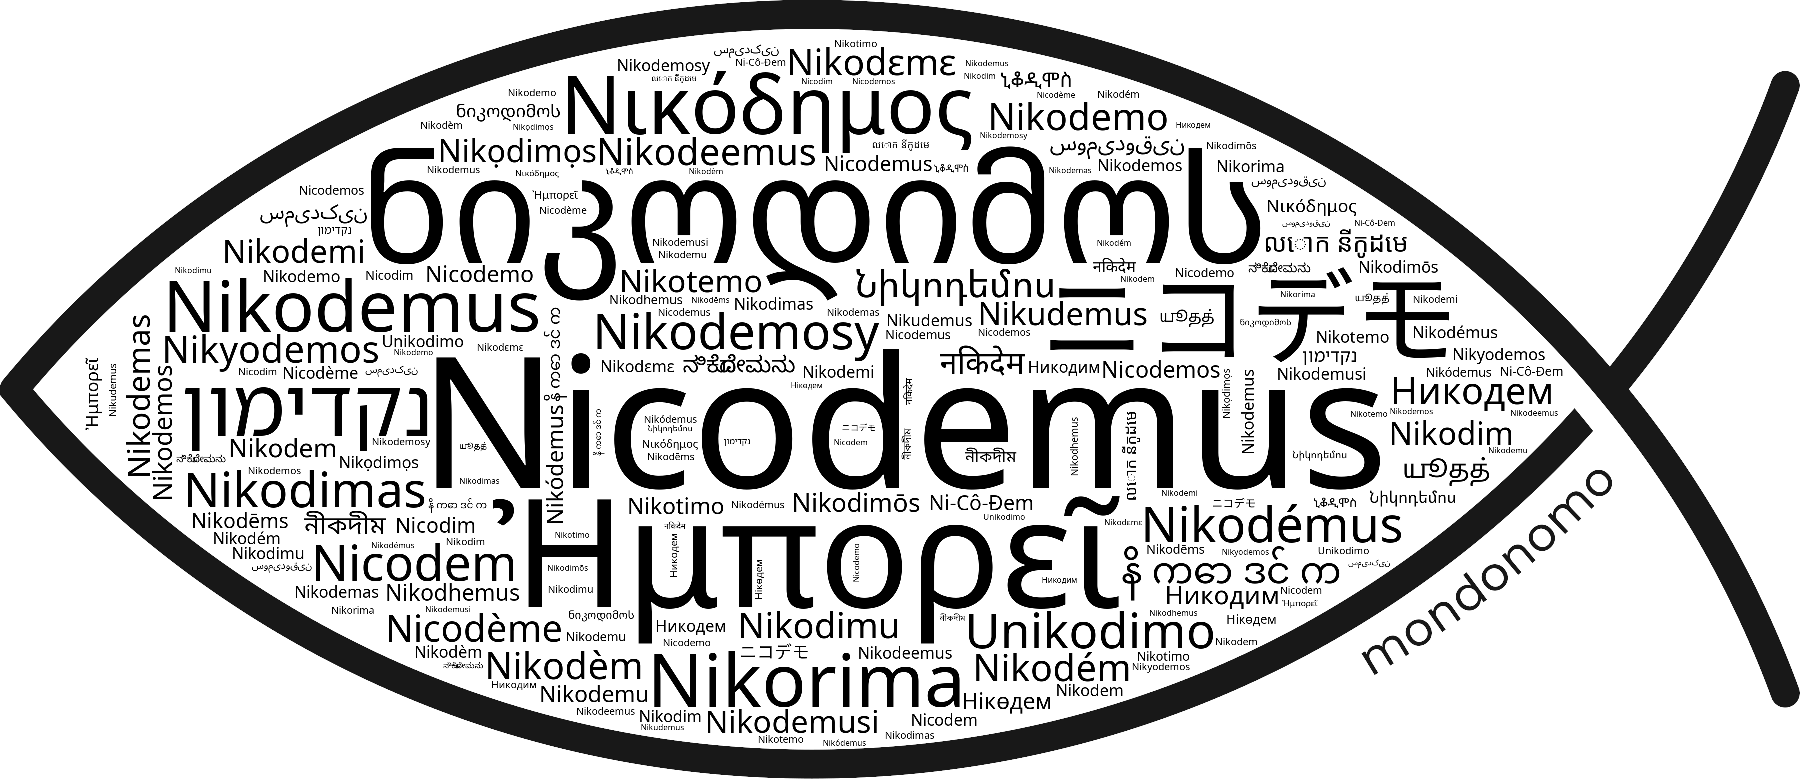 Name Nicodemus in the world's Bibles